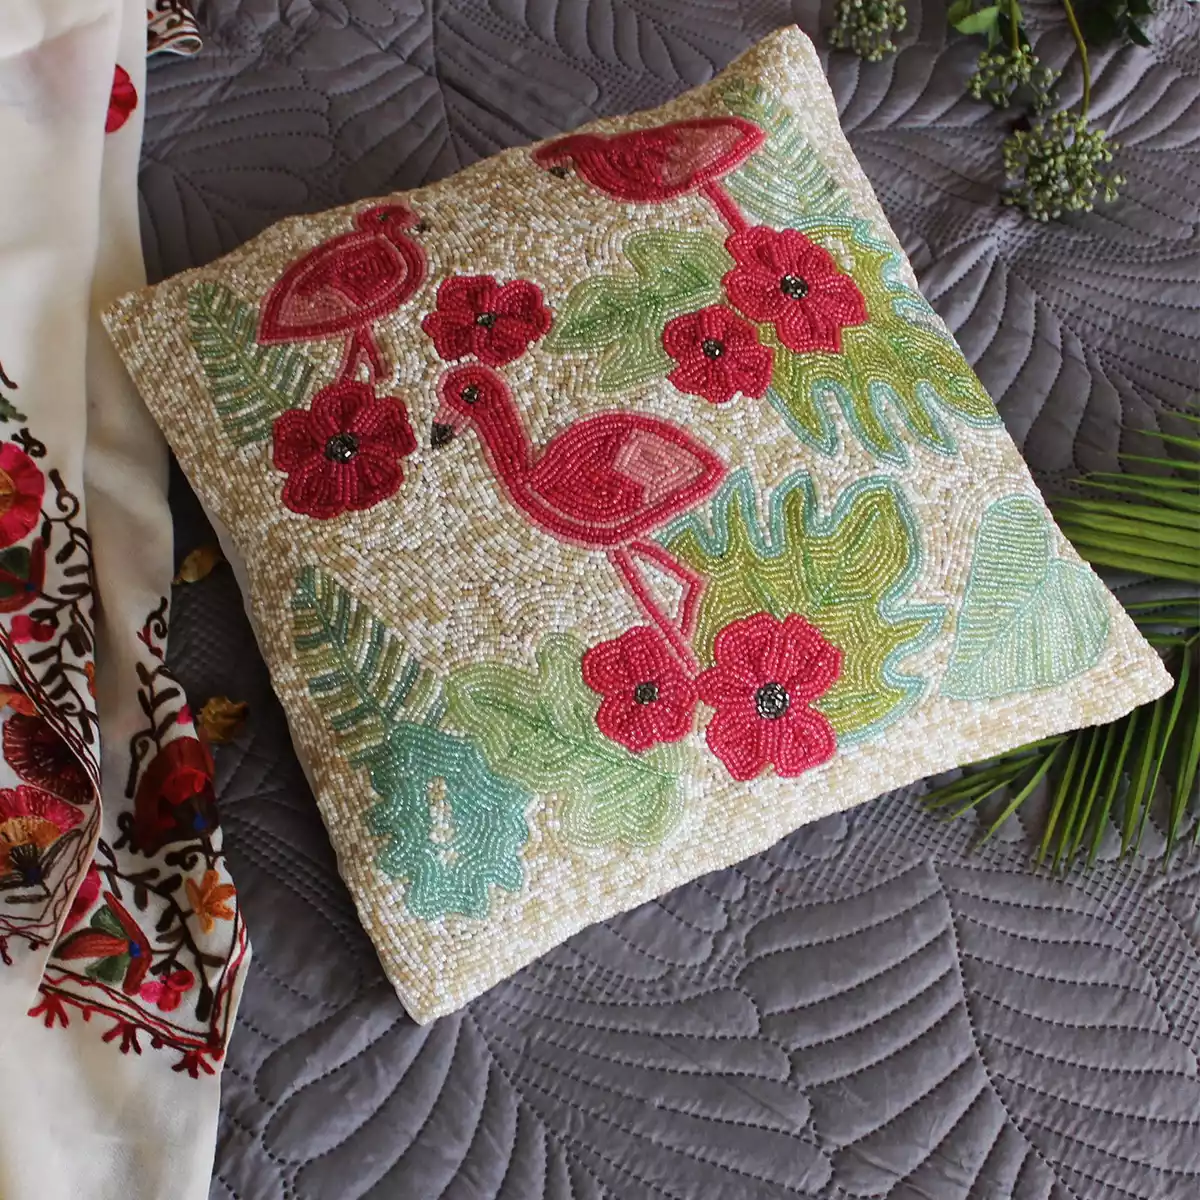 Harmony with Flamingo Beaded Cushion Cover